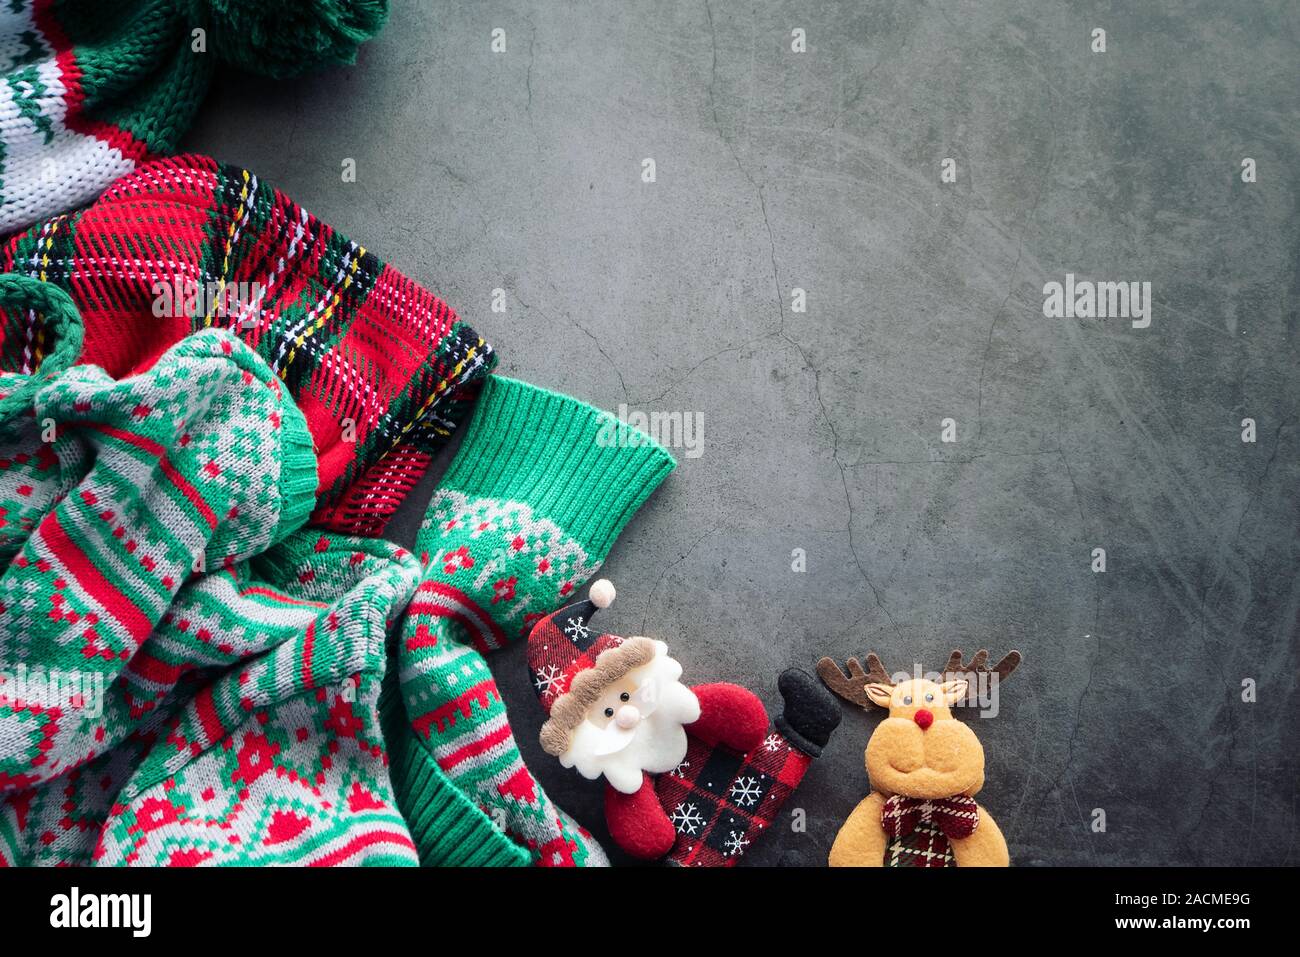 Grünen Pullover und rot Scotch decke Verlegung auf dem Zement Hintergrund mit einem Santa Claus Doll und ein Rentier für Weihnachten Ornament mit Kopie Raum Stockfoto